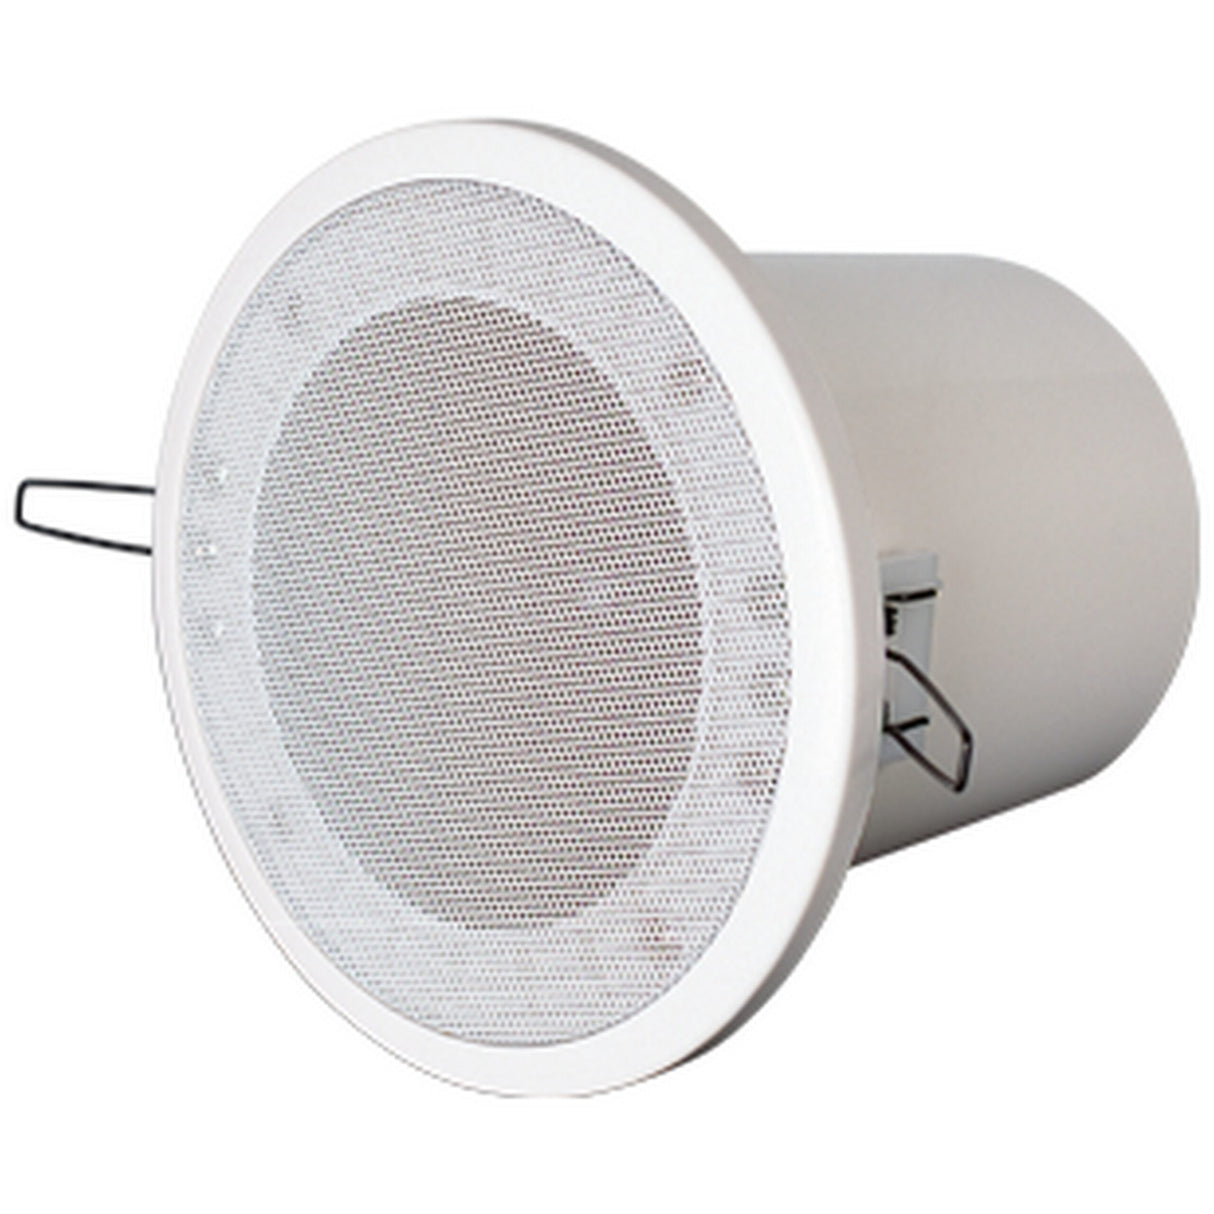 Yorkville C160W Coliseum Mini Series 4-Inch Flush Mount Pot Light Ceiling Speaker, White